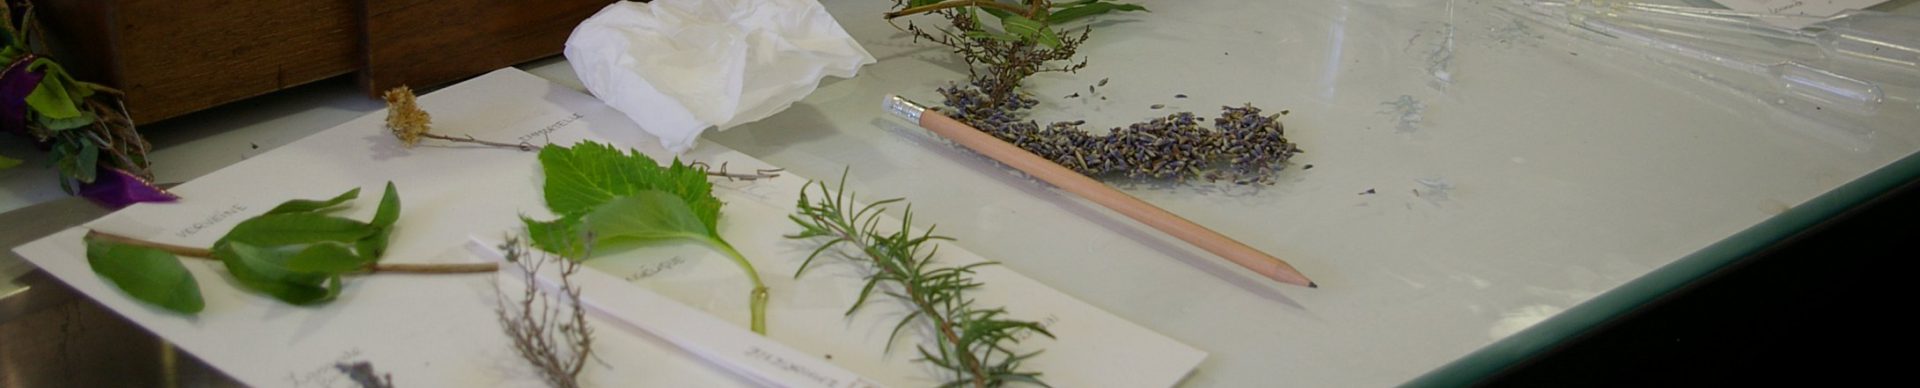 Atelier de découverte des plantes UESS